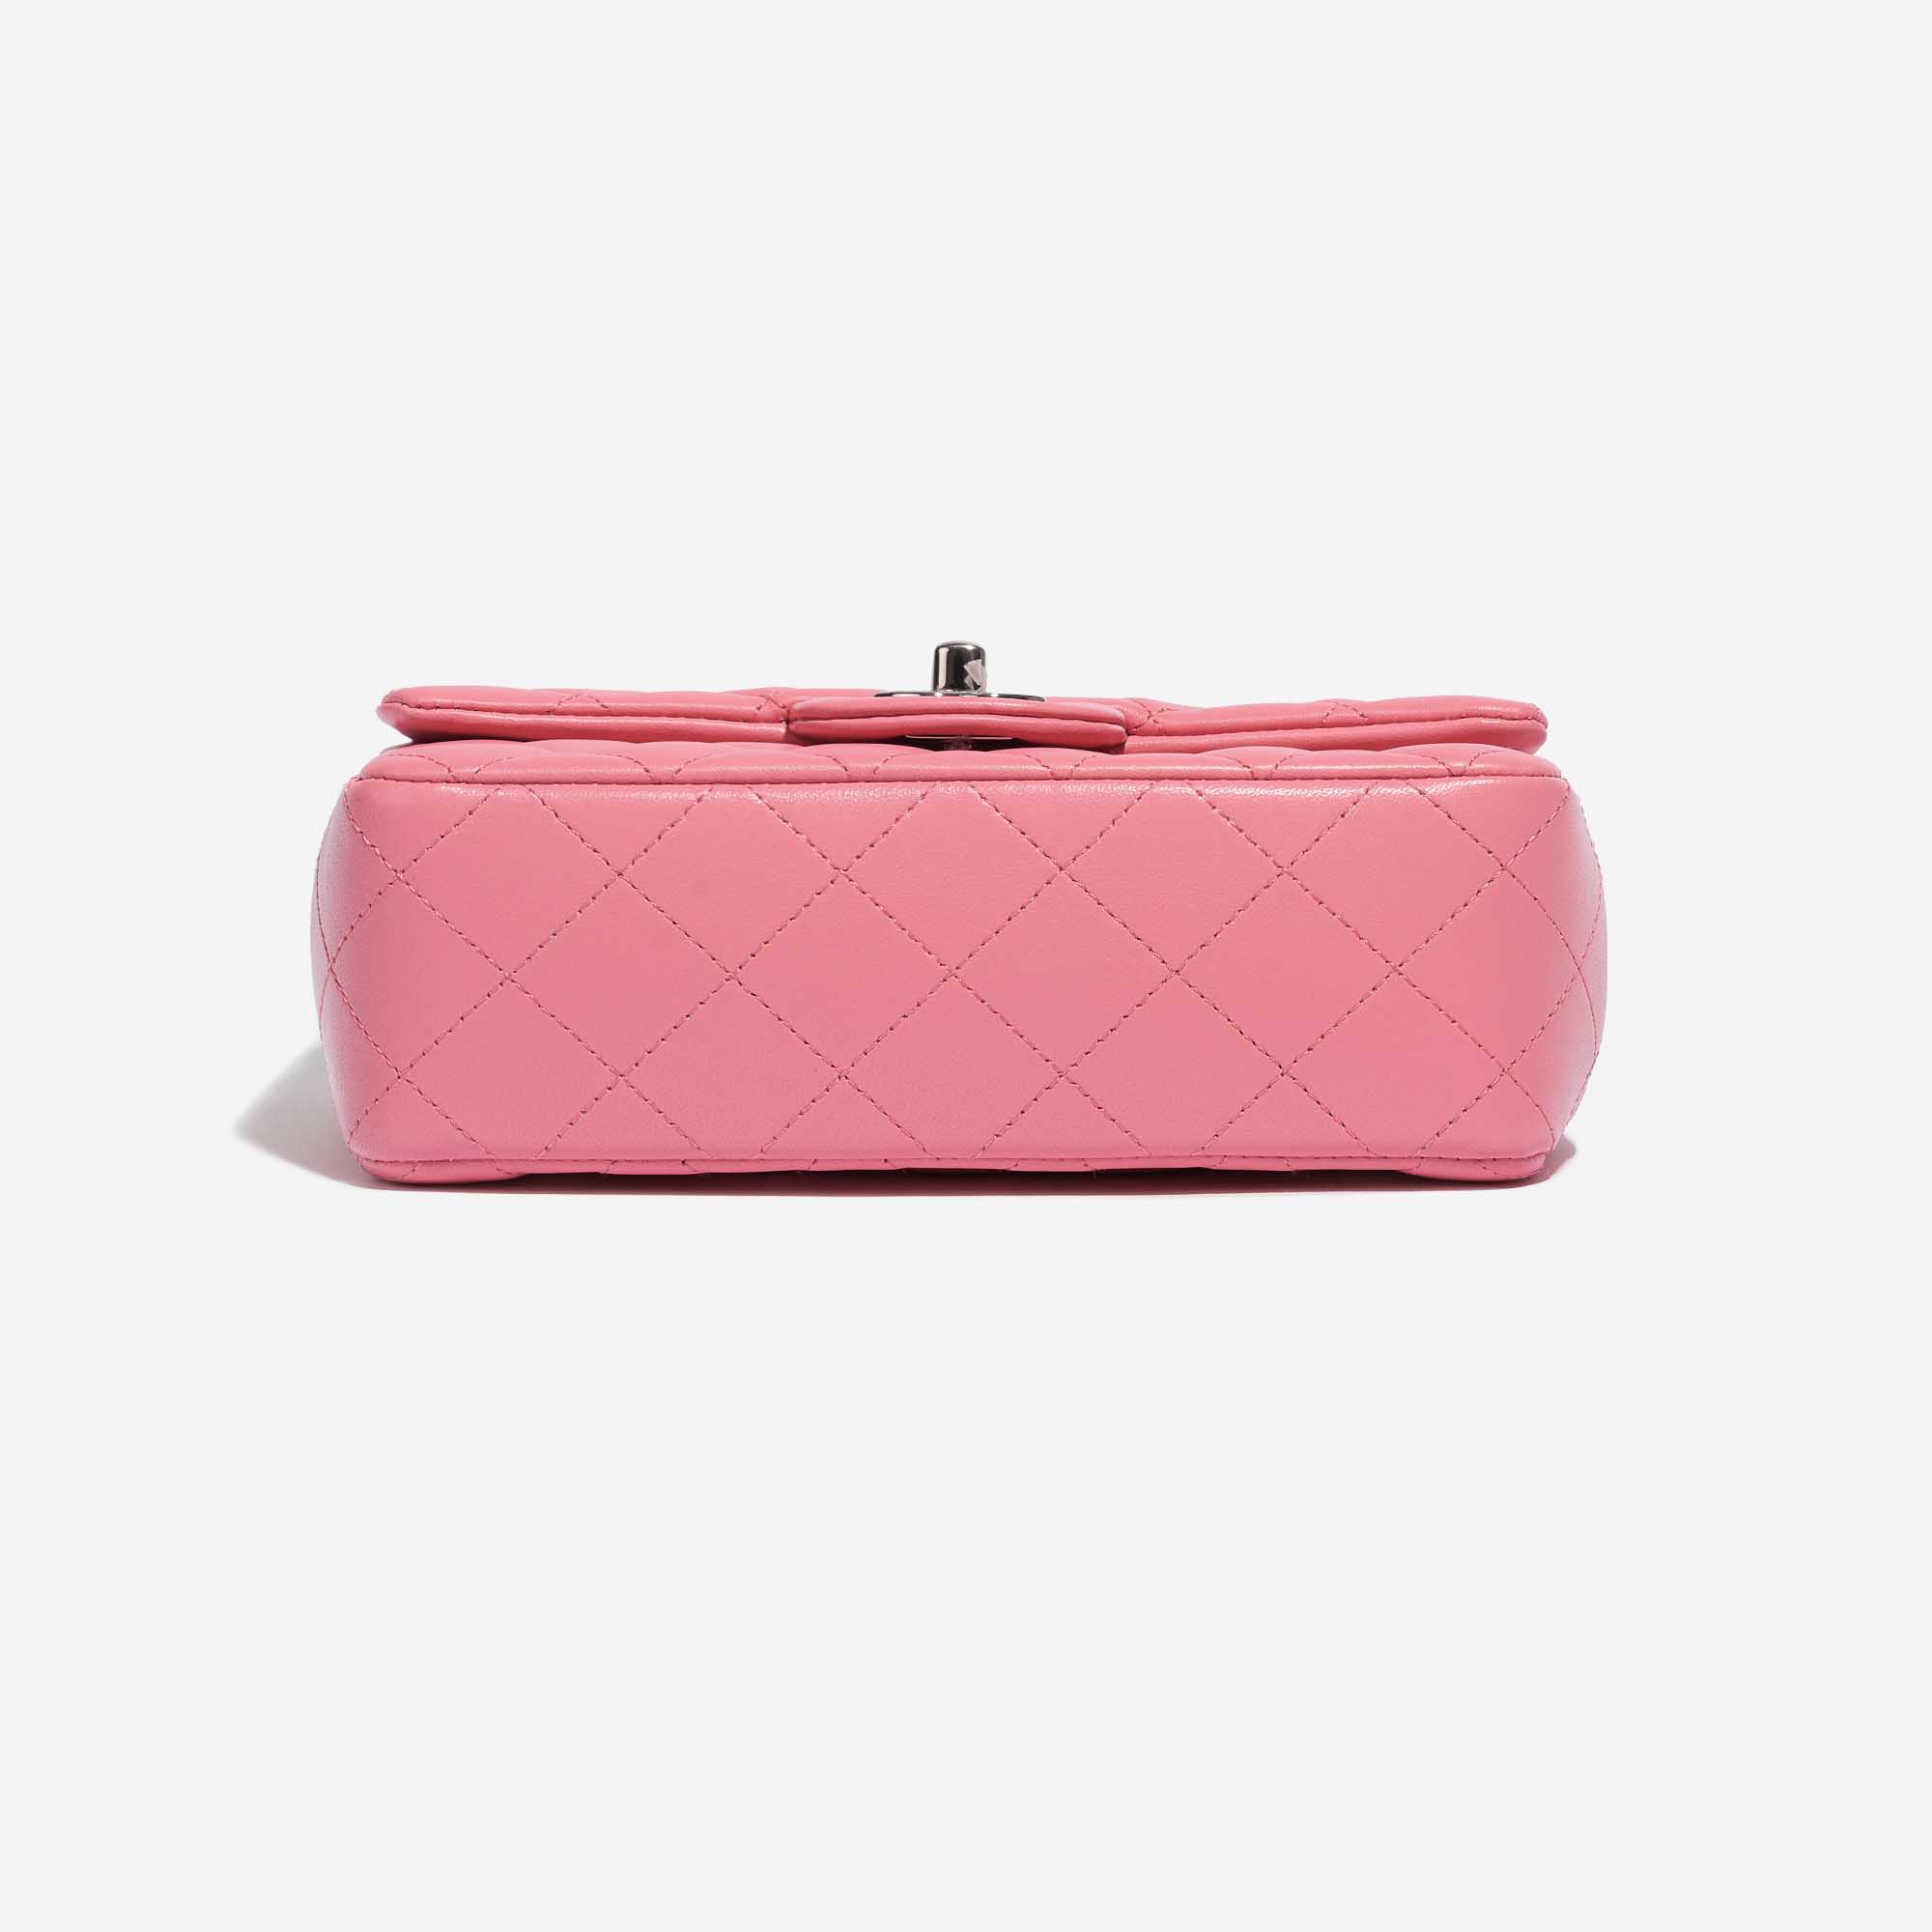 pink mini chanel bag